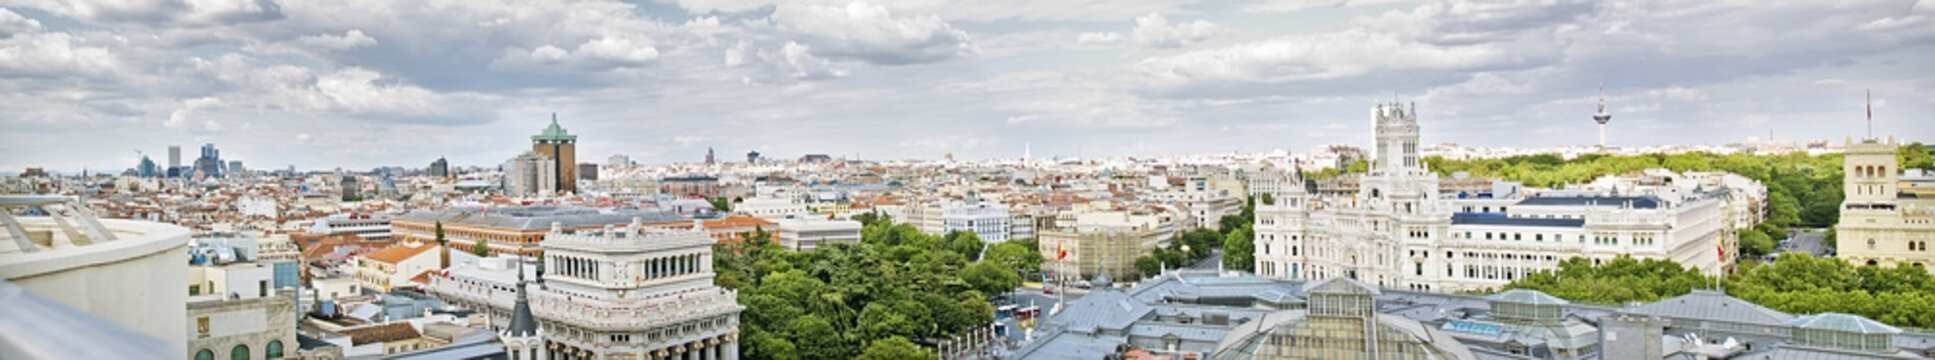 Madrid panoramical view